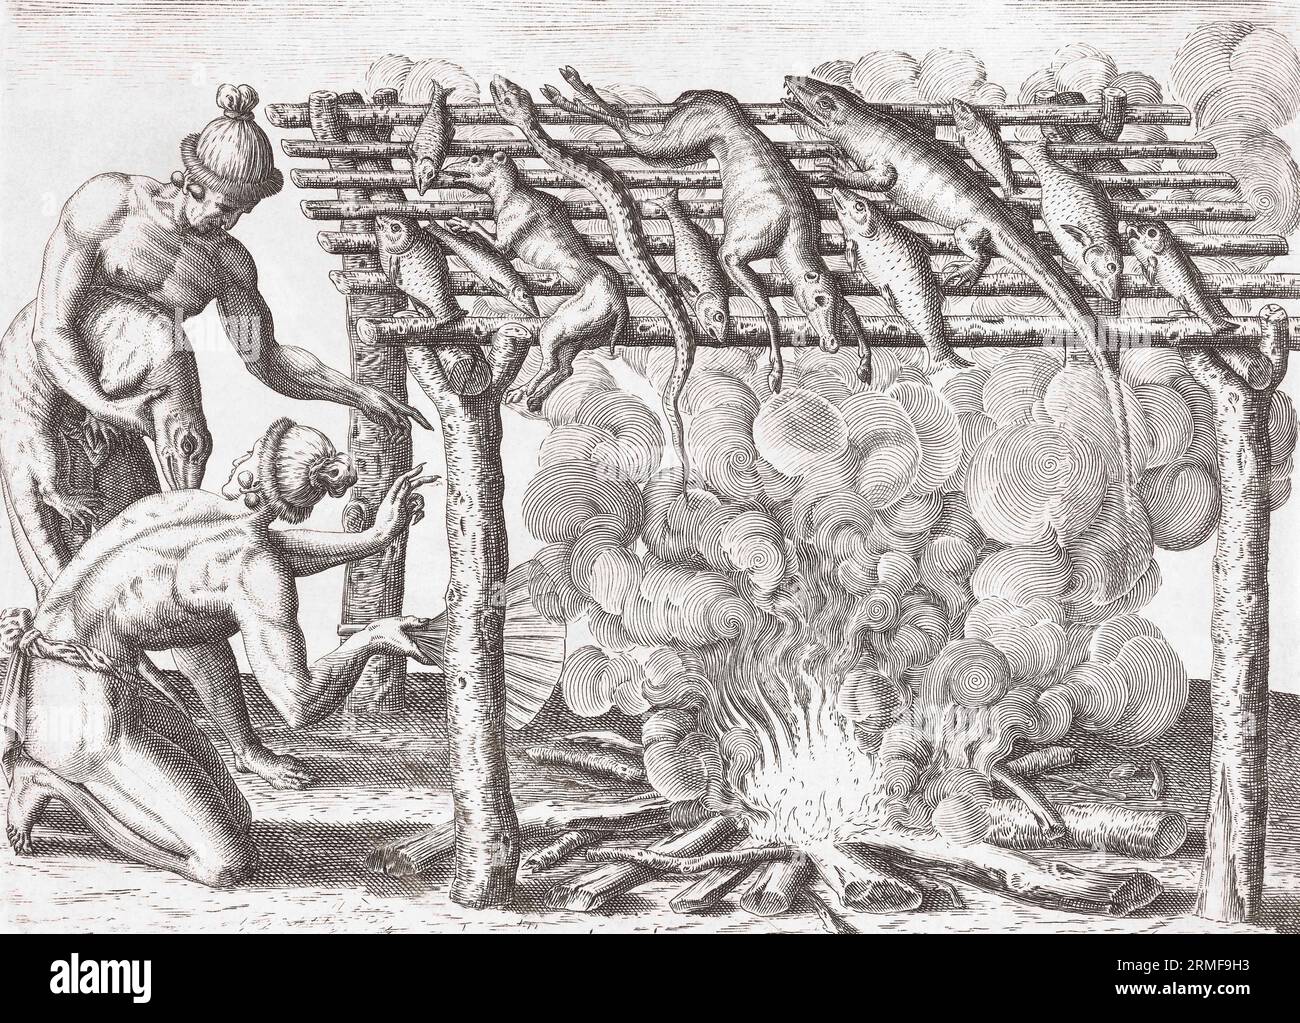 Zwei Indianer rauchen ihren Fang von einheimischen Tieren und Reptilien. Nach einem Werk von Theodor de Bry aus dem späten 16. Jahrhundert. Stockfoto